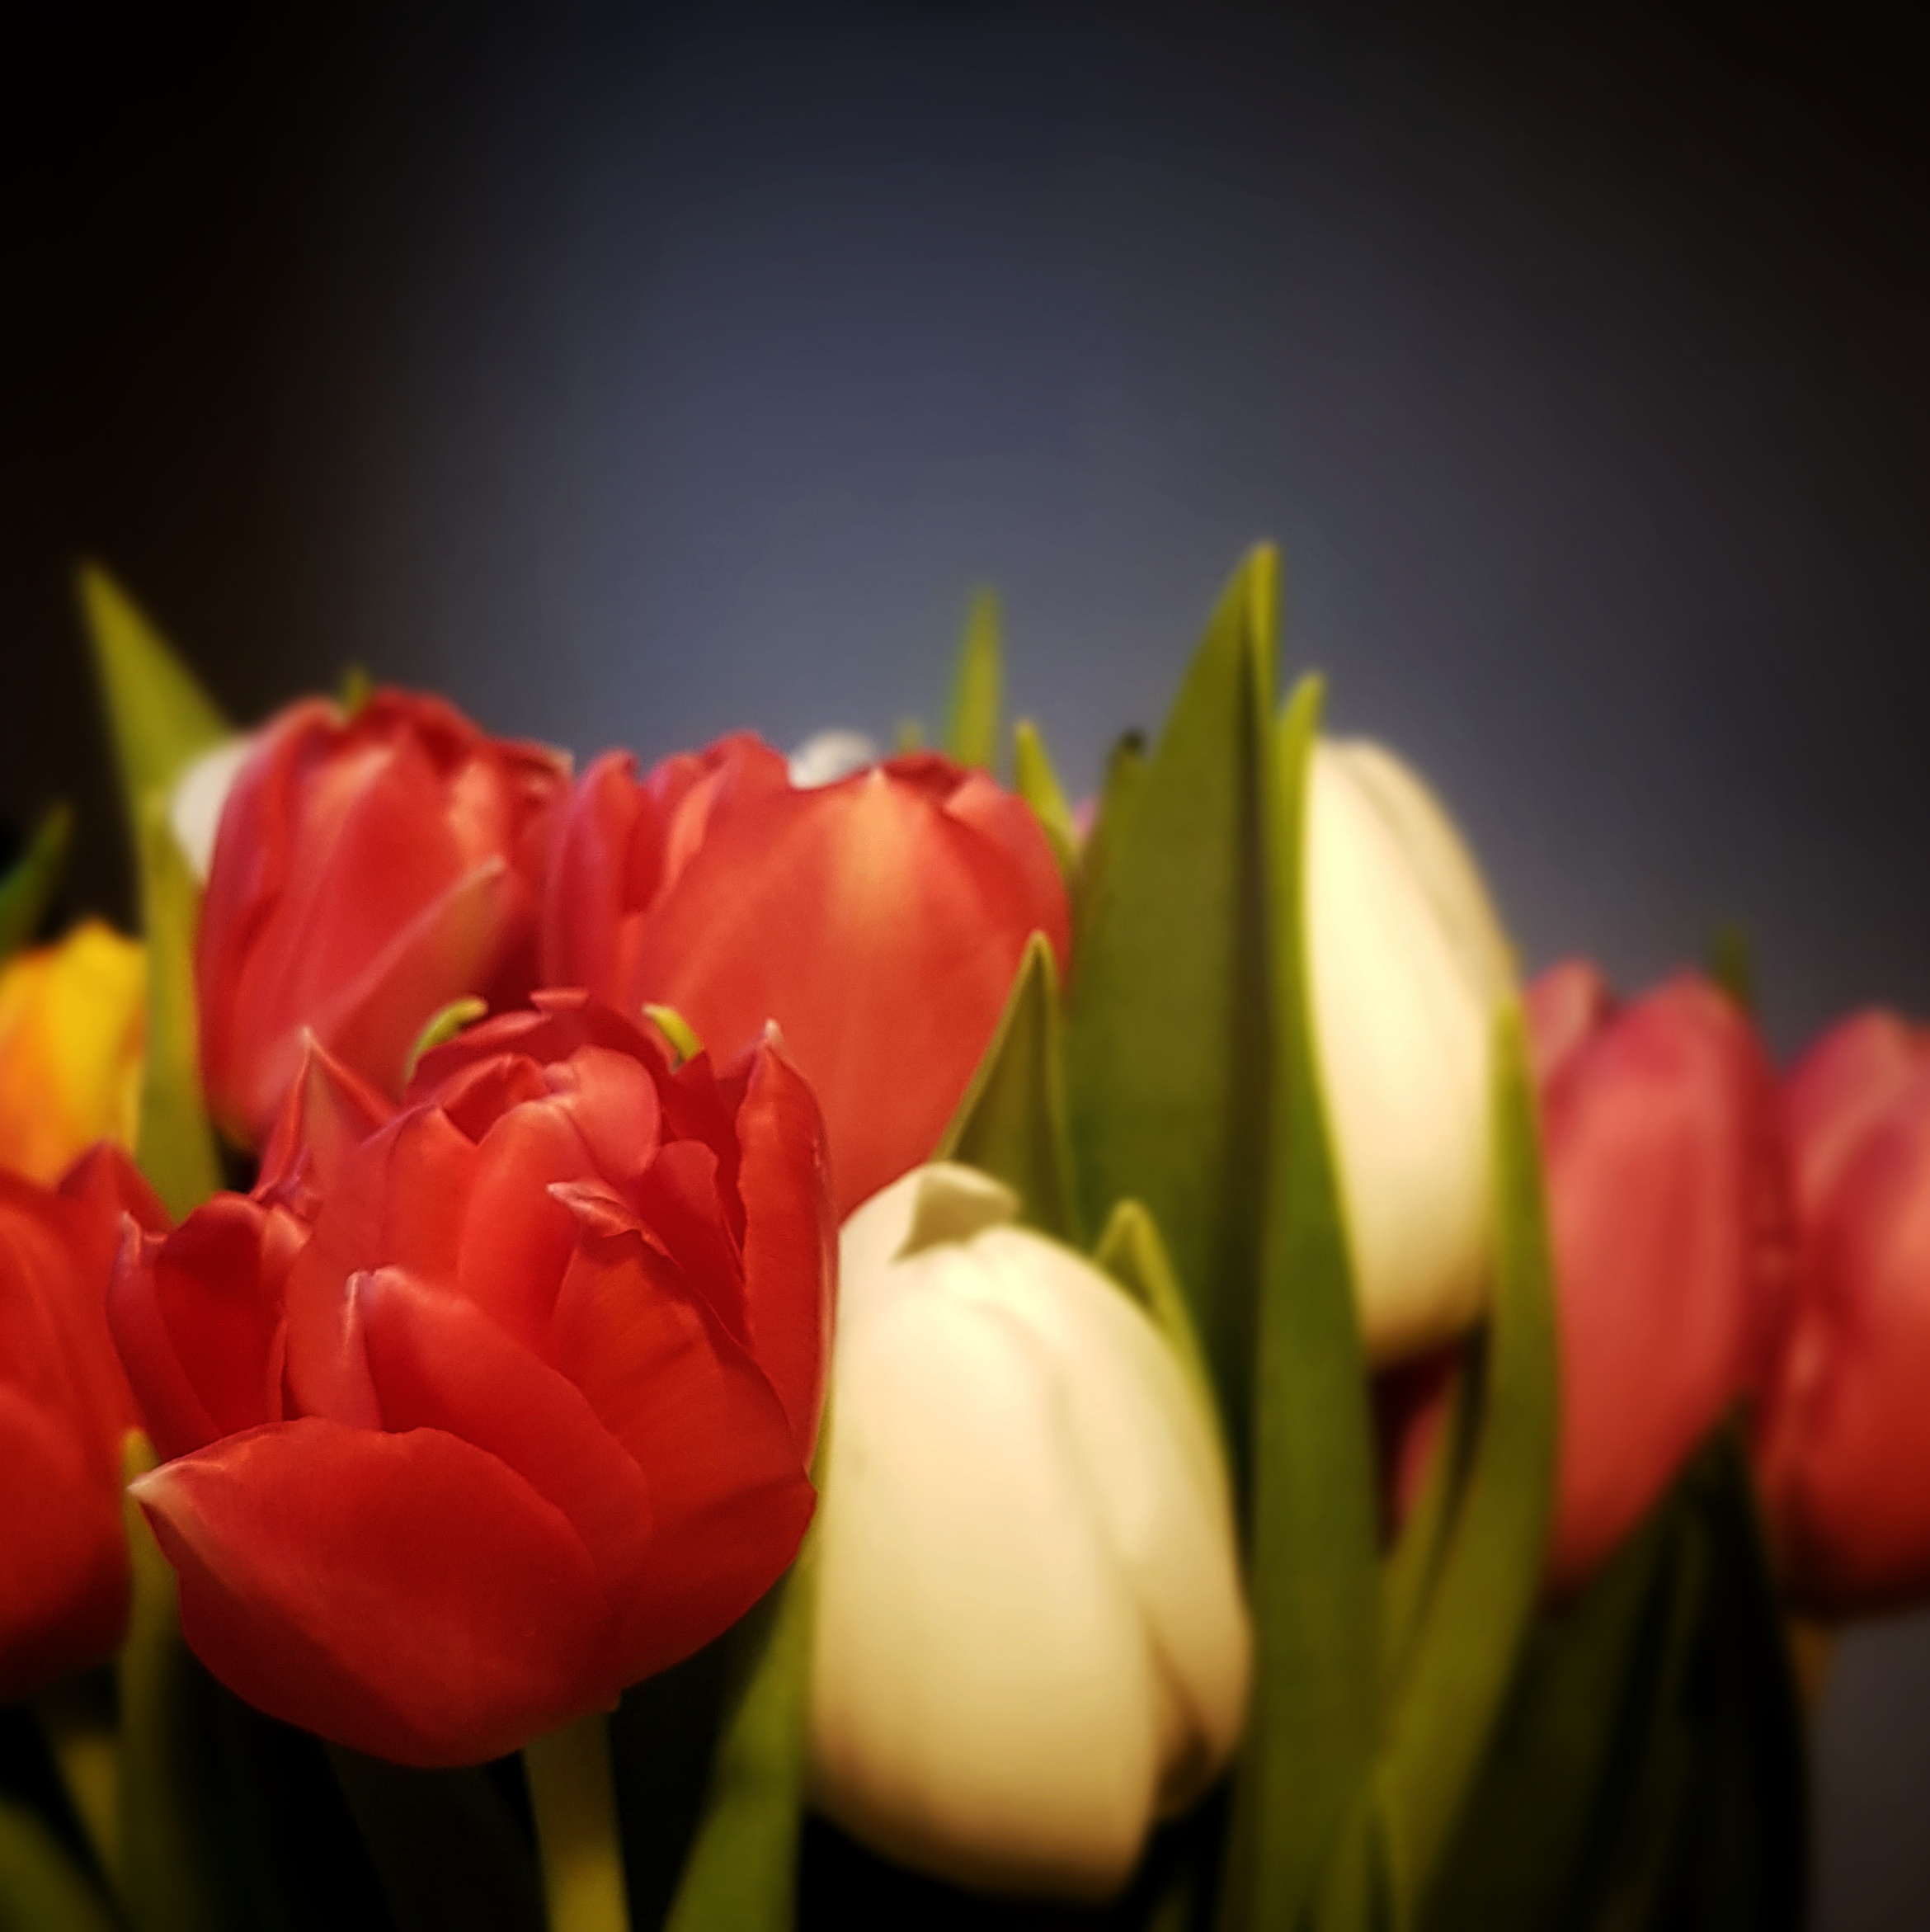 Day 24: January 24 - Tulips